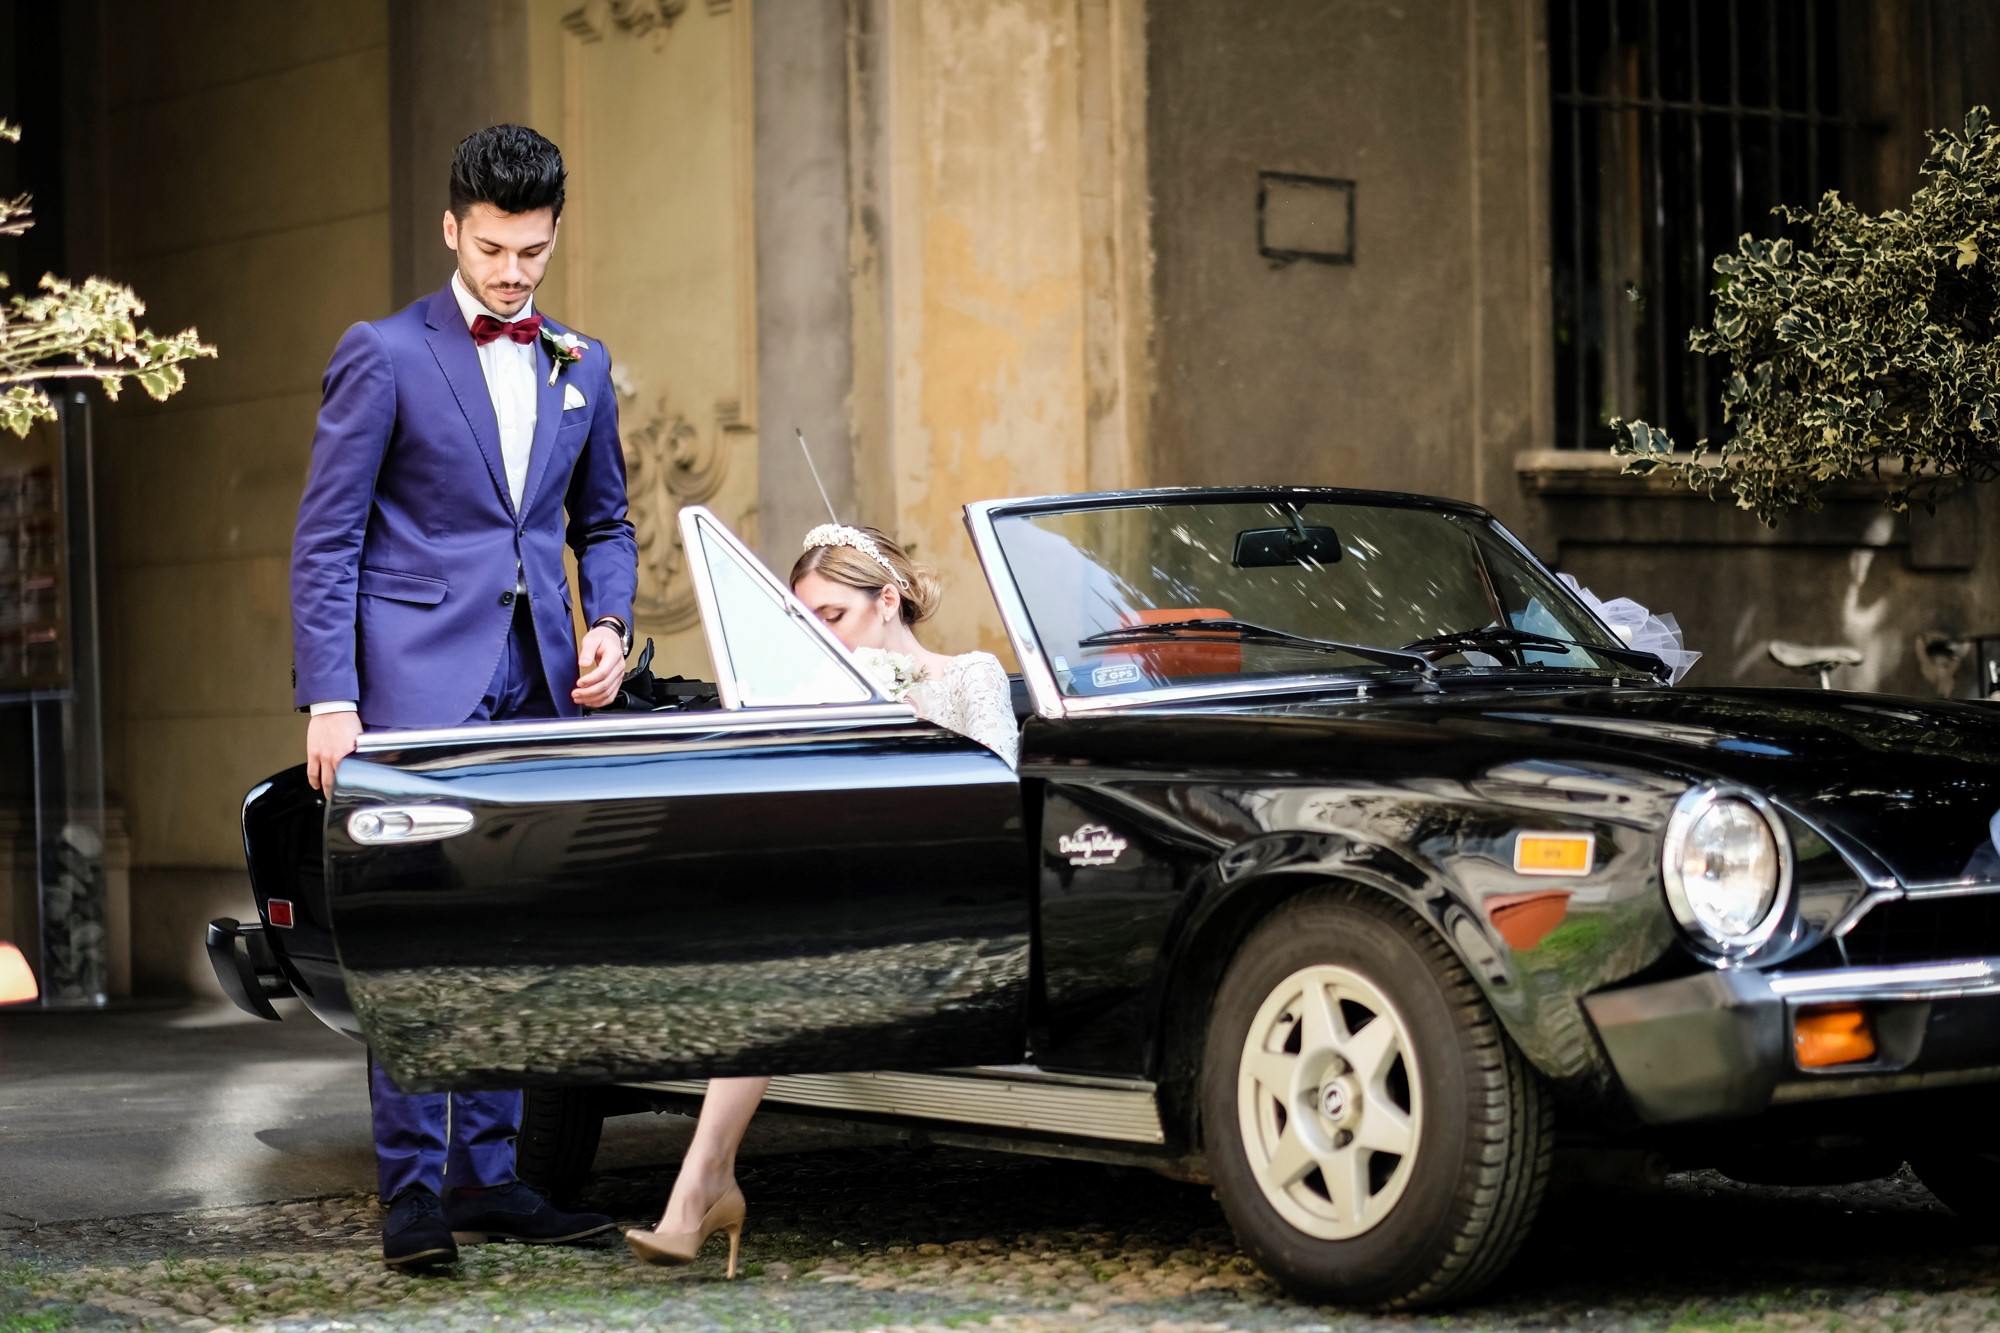 A-Torino-Piemonte-Fiat-124-Spider-America_matrimonio_cerimonia_evento_auto-depoca_classic-car_wedding_events_ceremony.jpg